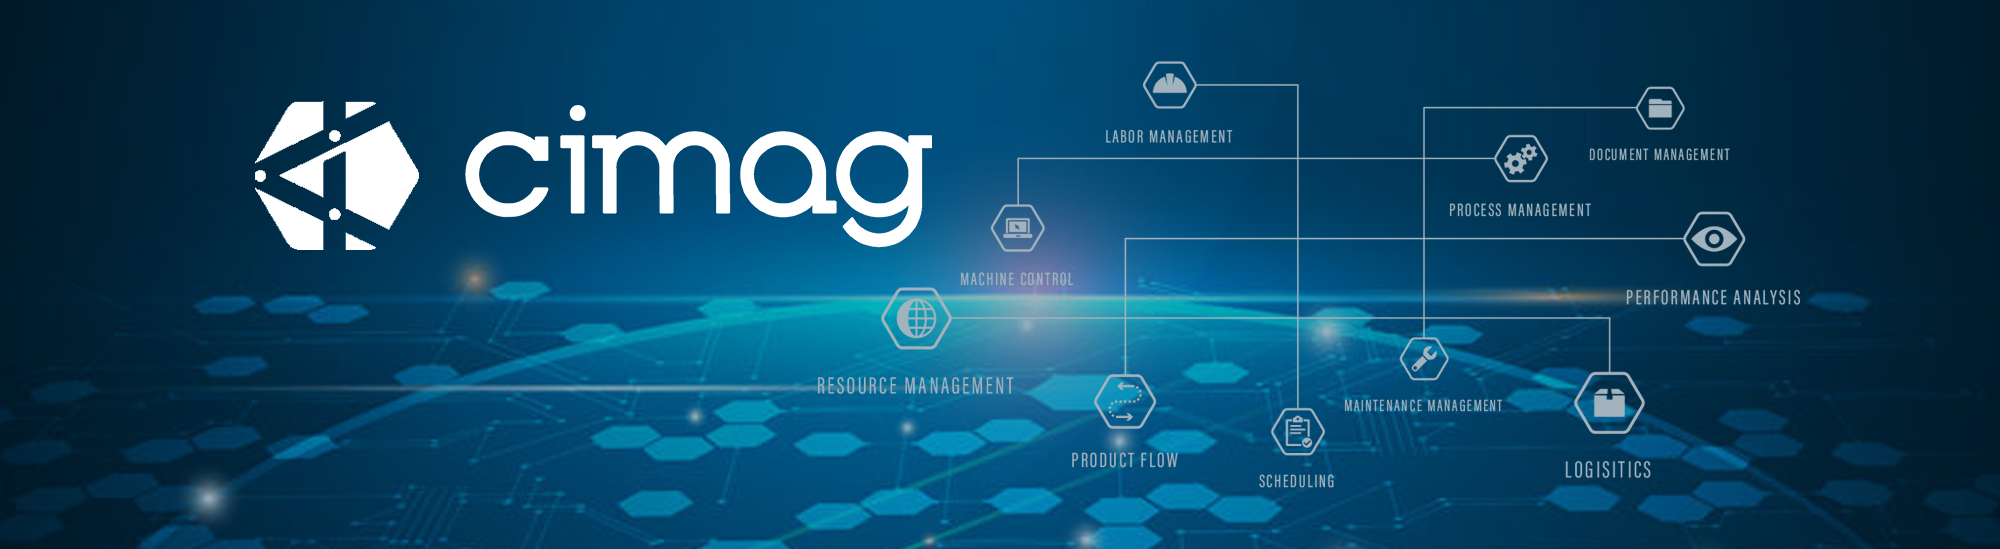 CIMAG logo on a blue background